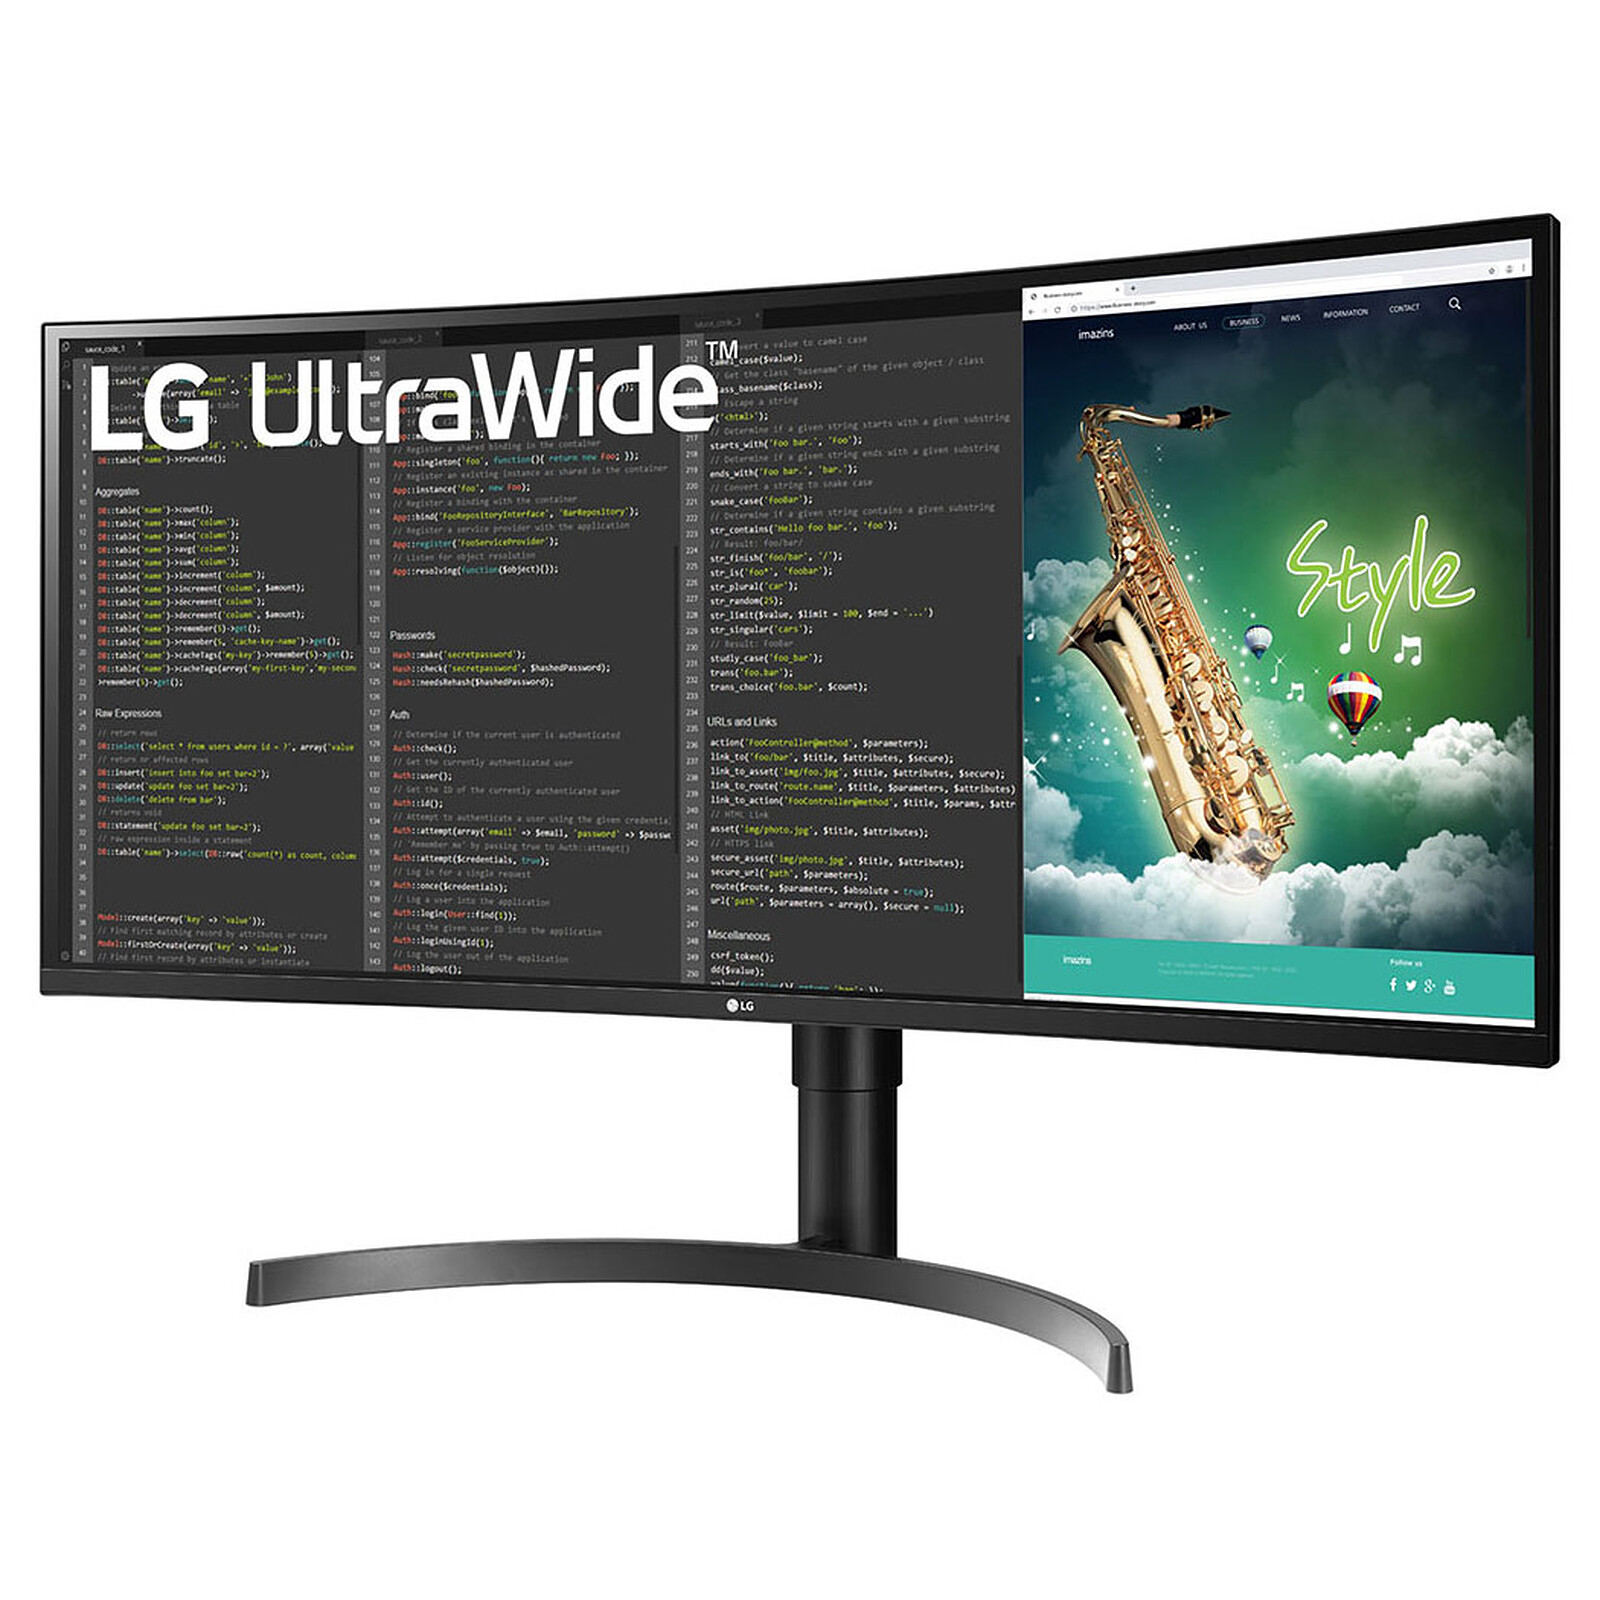 Ecran PC gamer ultrawide LG : Enfin un moniteur pour le